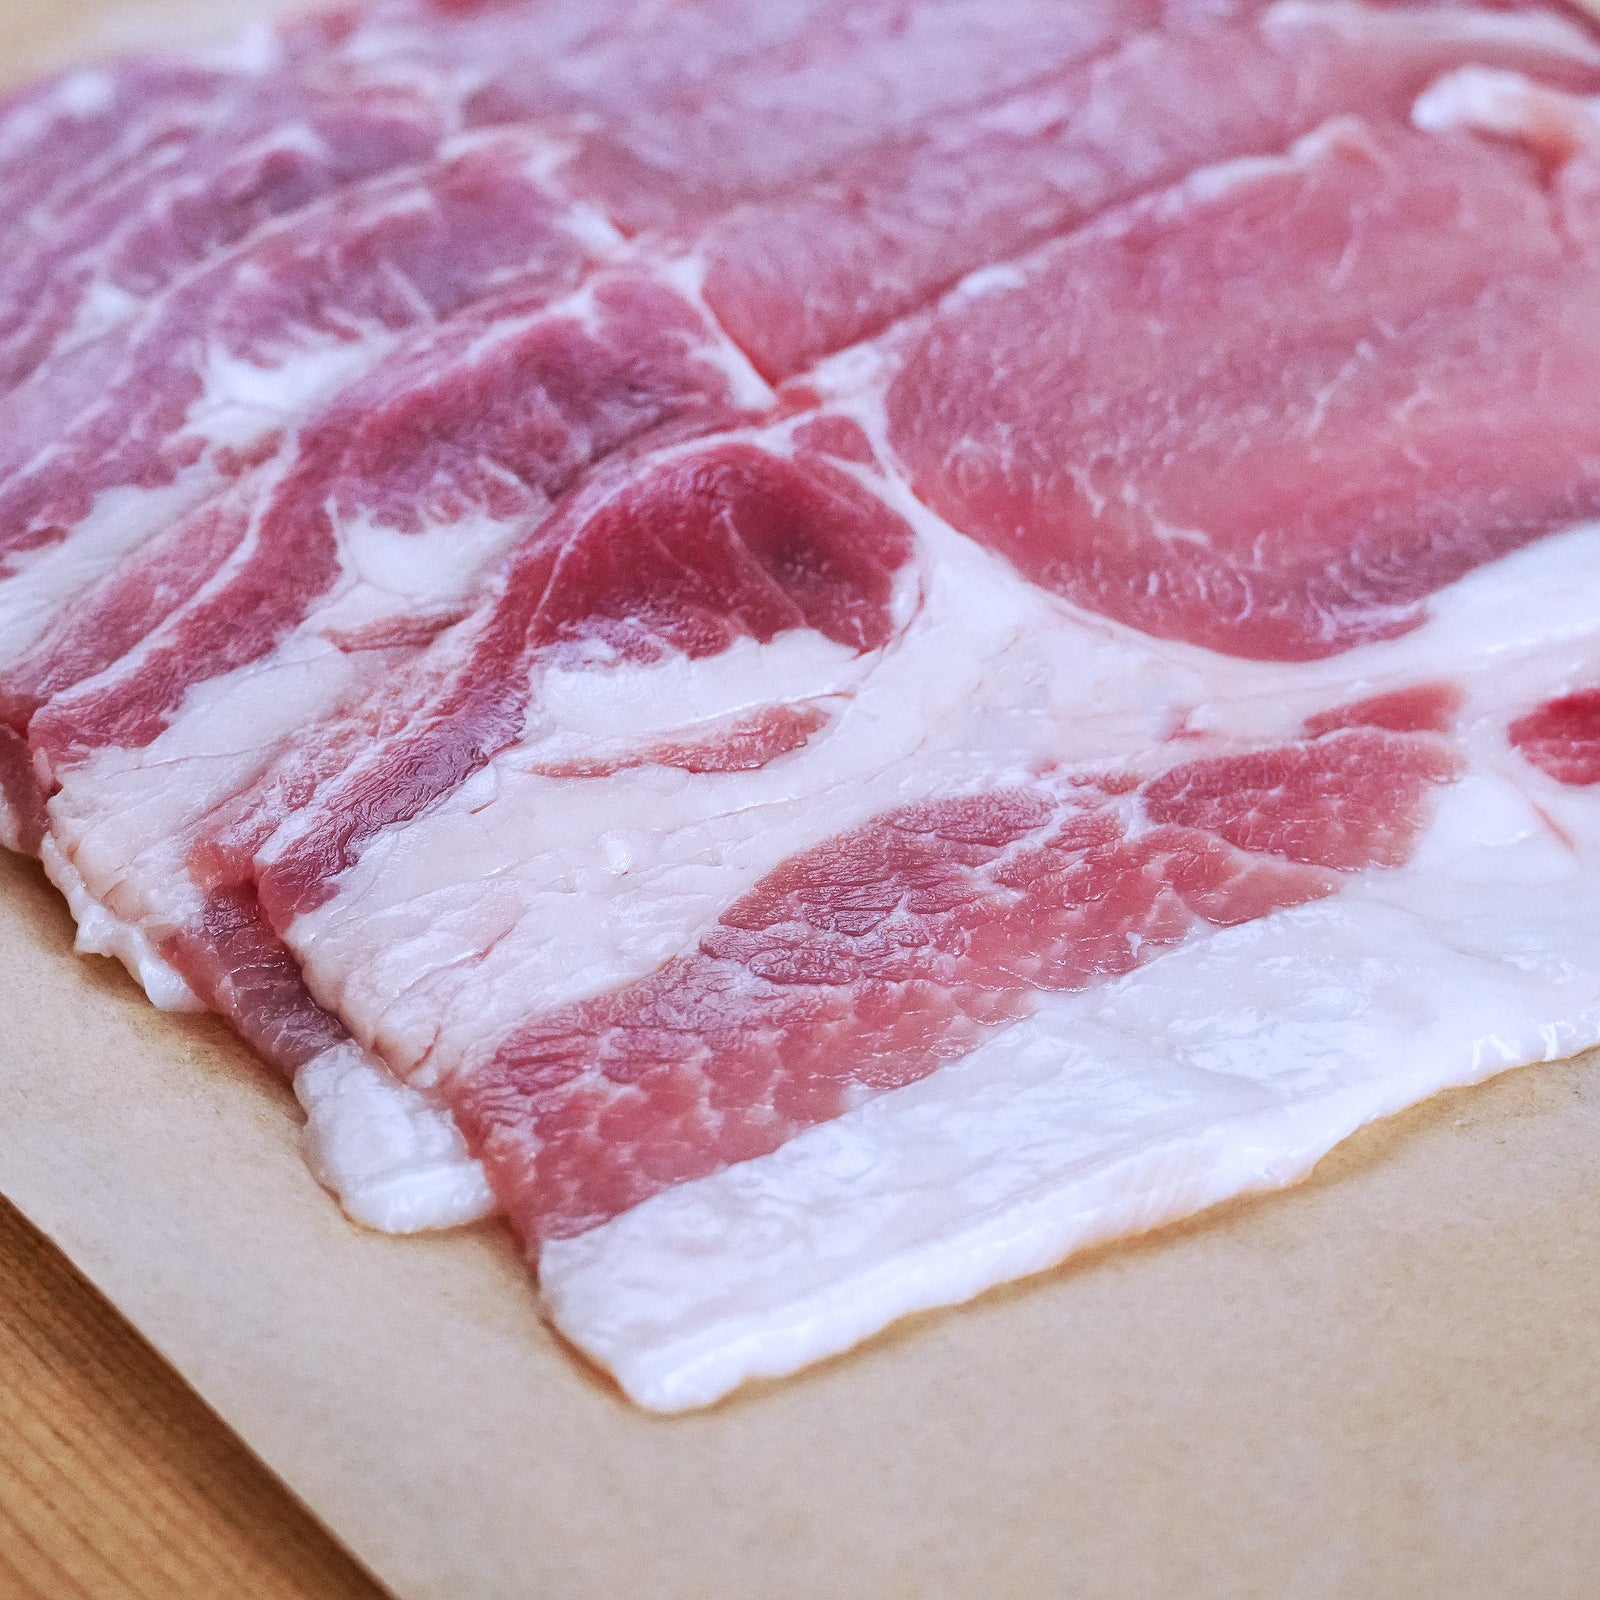 Free-Range Pork Loin Slices (300g) - Horizon Farms